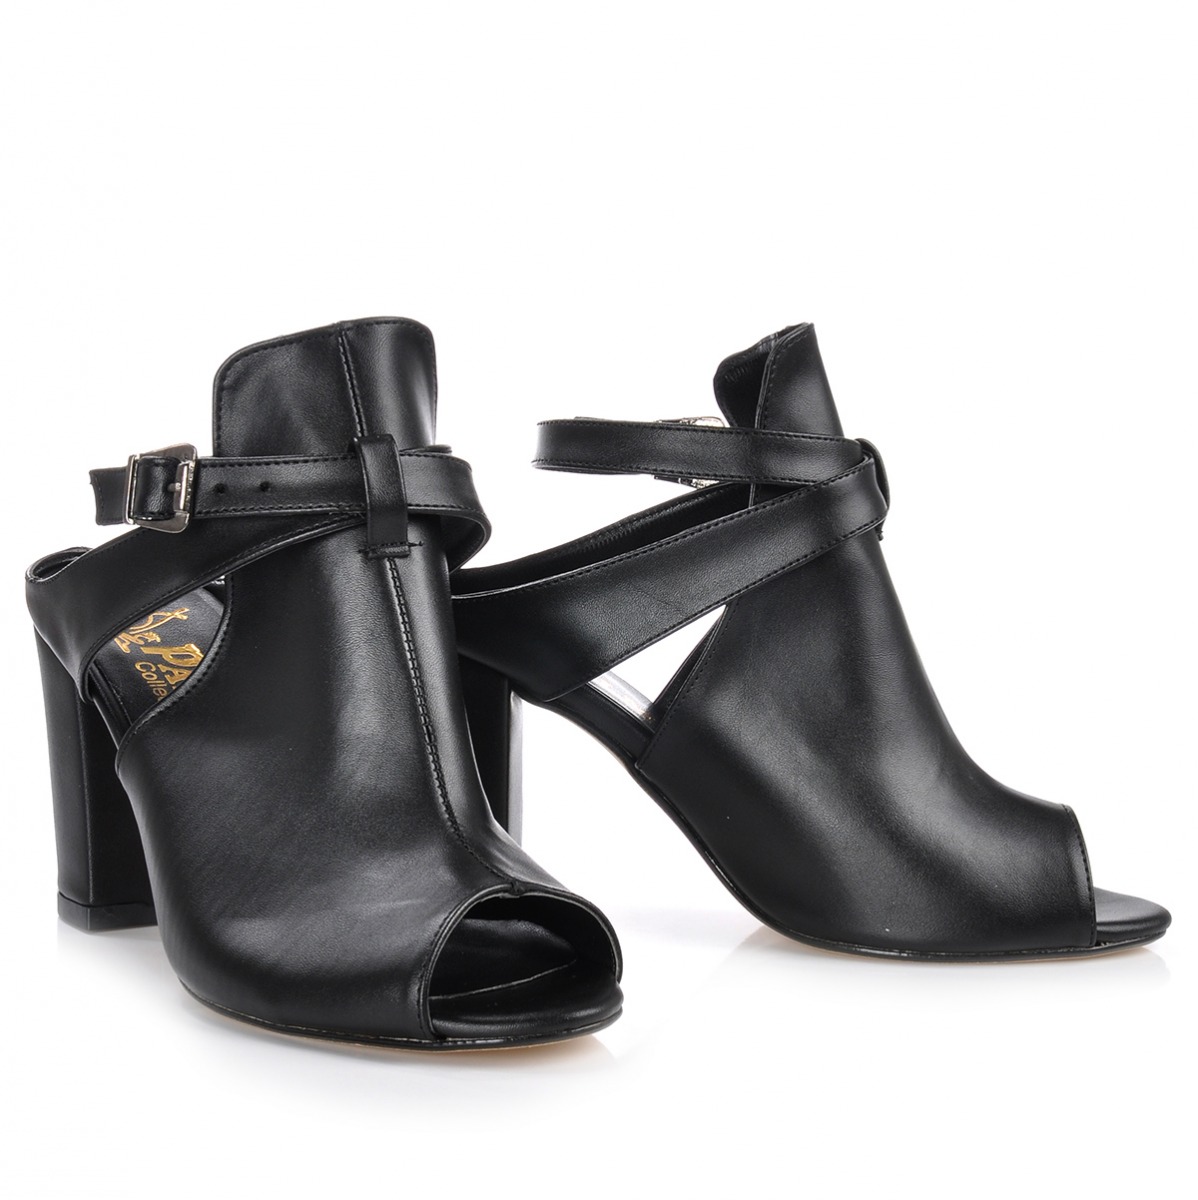 Flo Kadın  Siyah Klasik Topuklu Ayakkabı VZN-231Y. 4